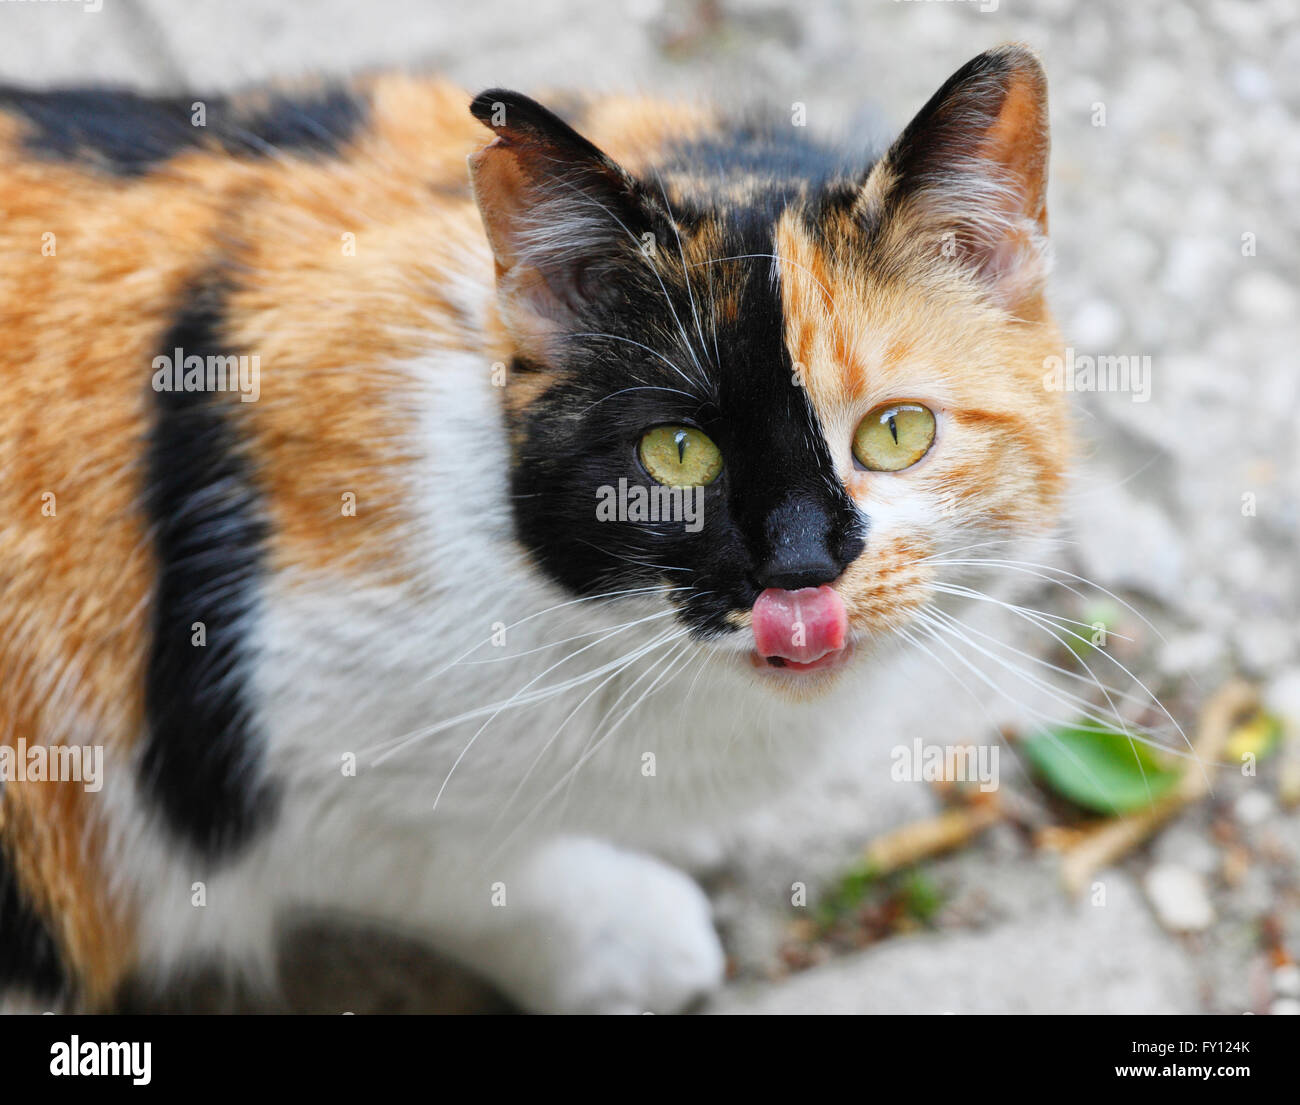 Fluffy cat licking un nez Banque D'Images